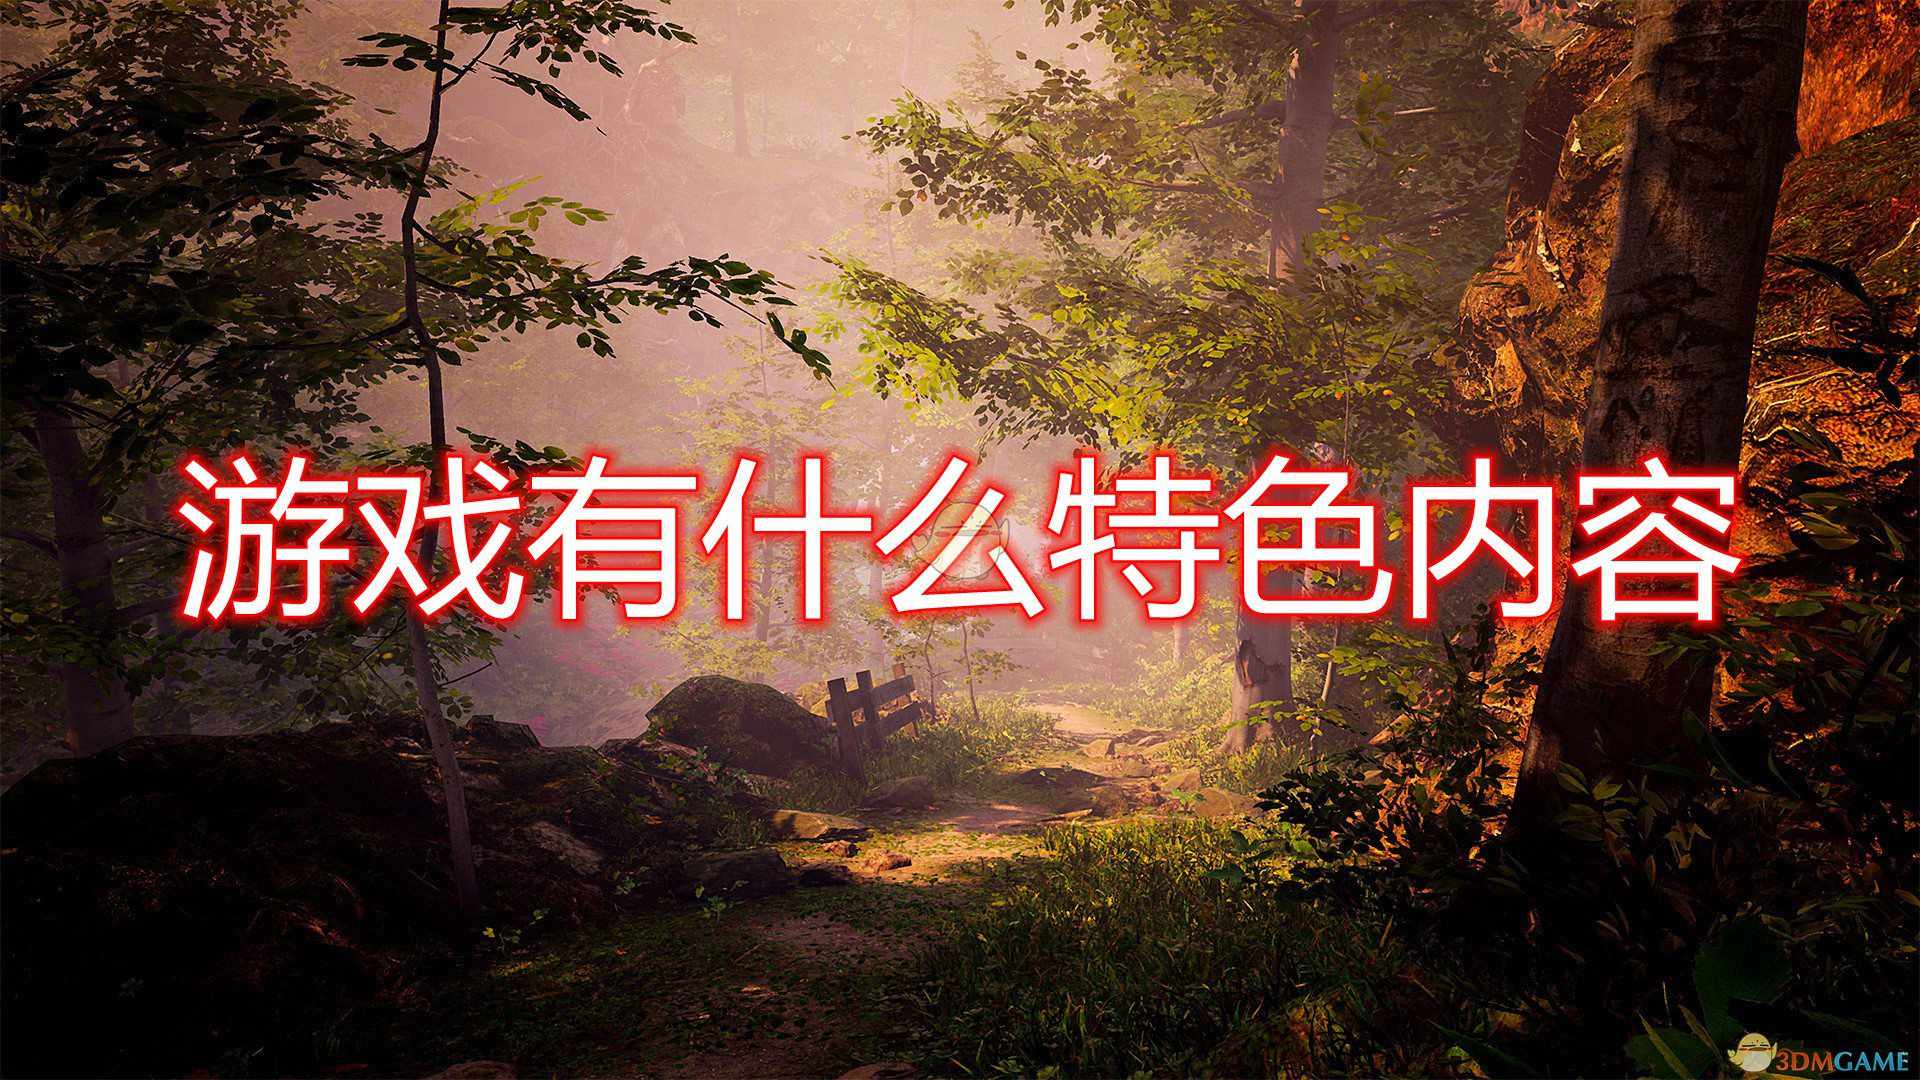 《传说中的森林》游戏特色内容一览